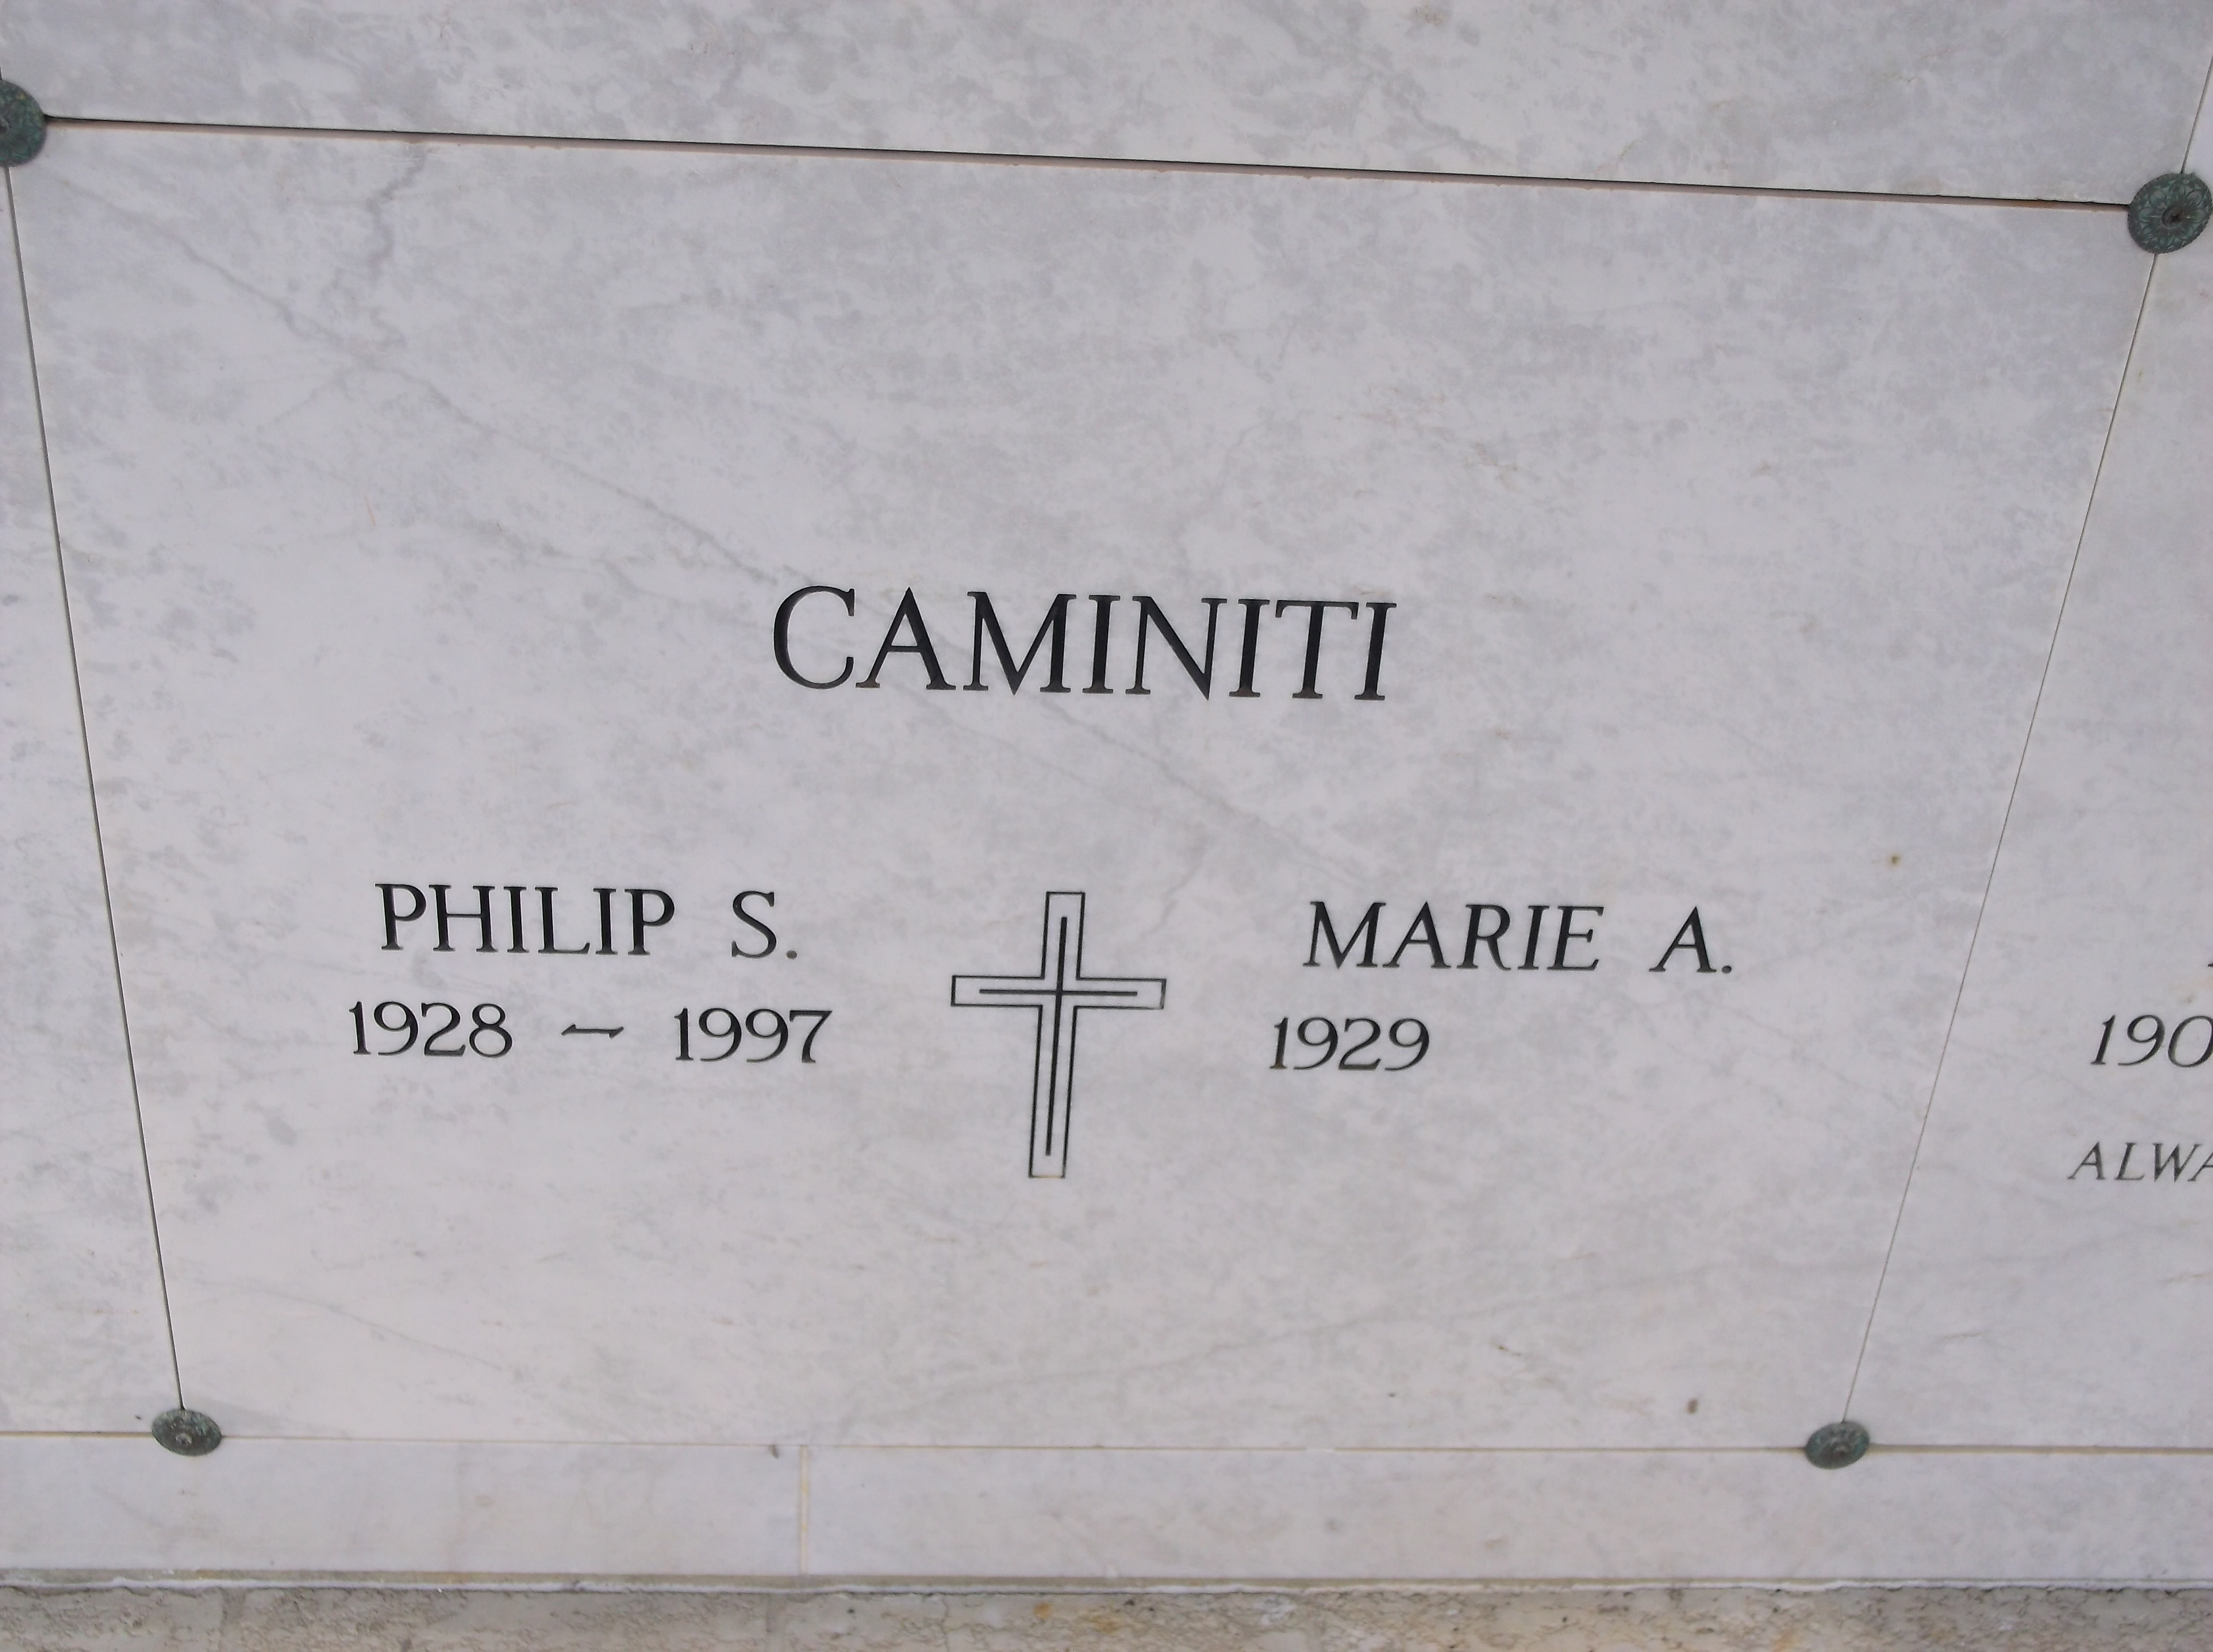 Marie A Caminiti